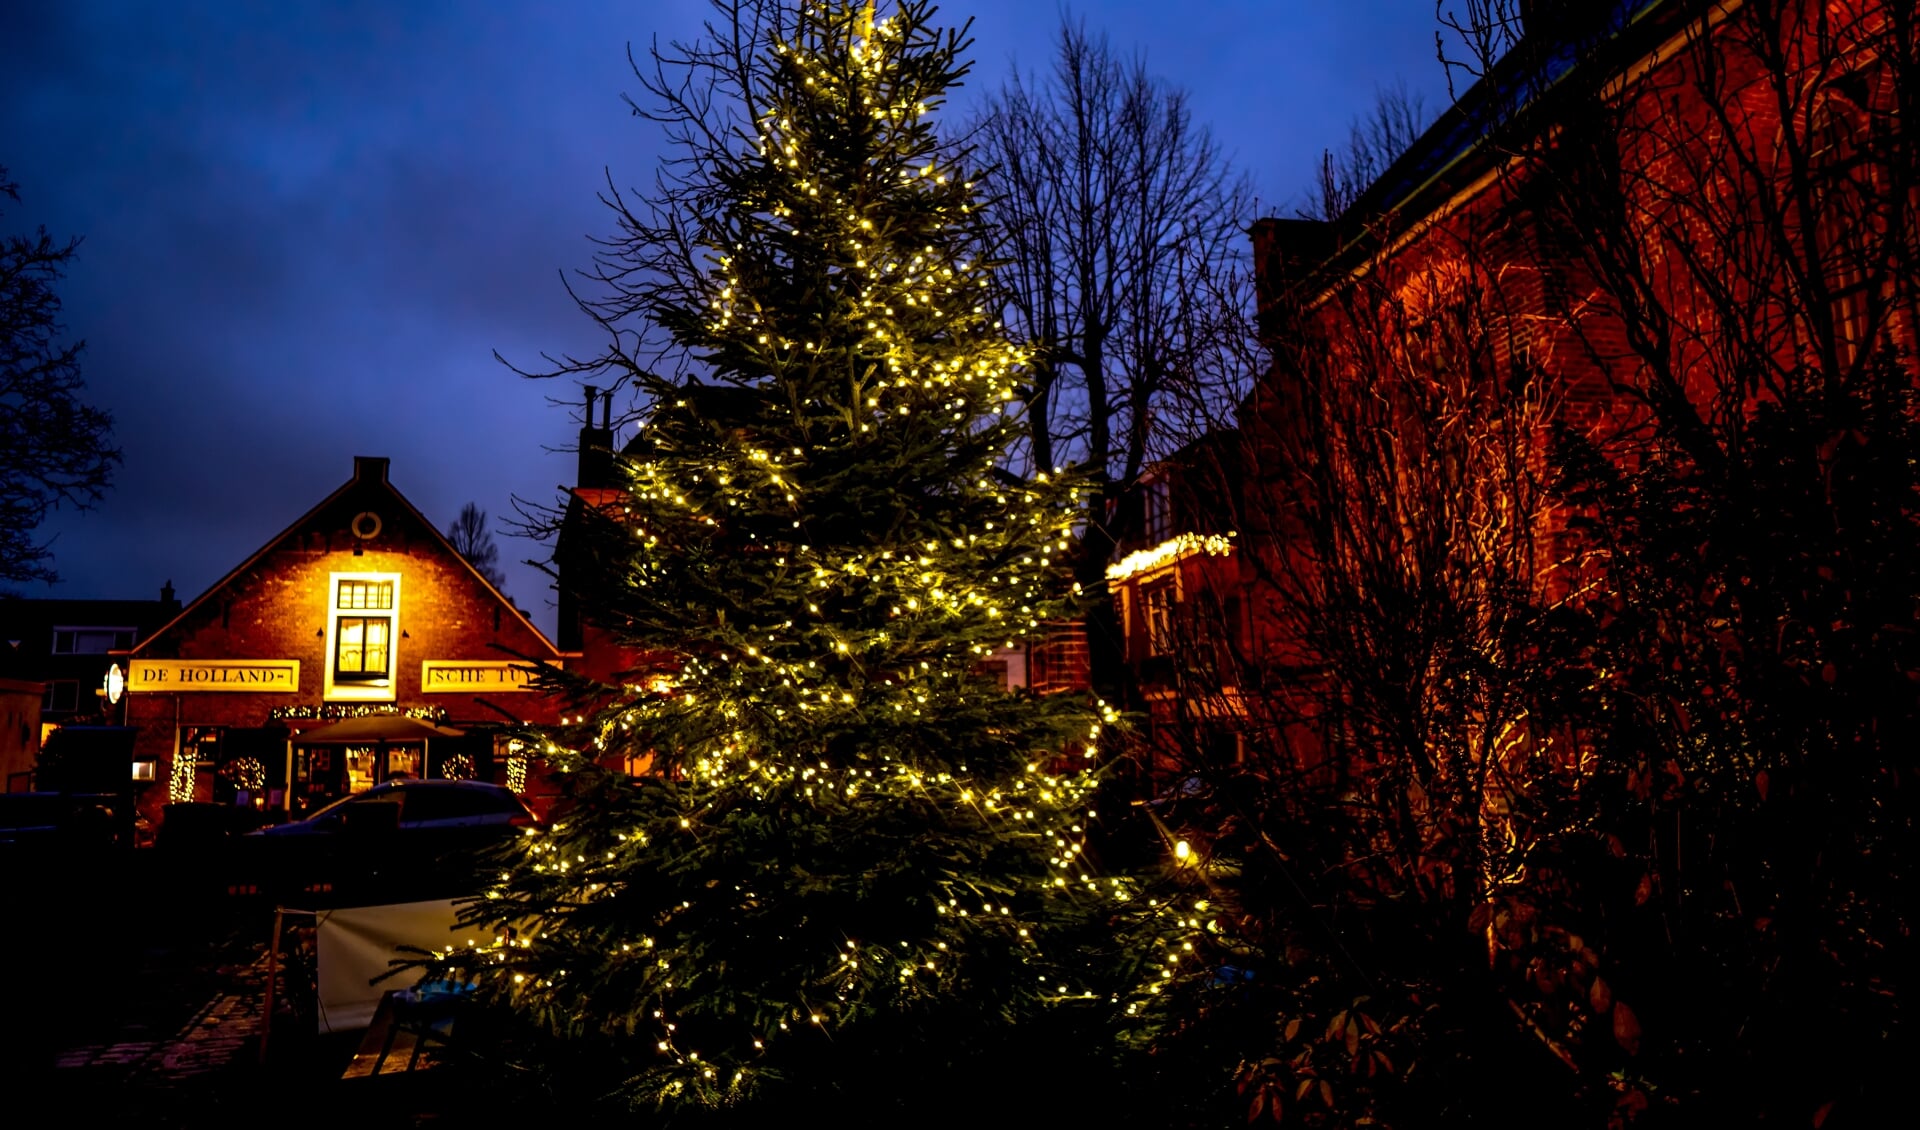 De verlichte kerstboom bij de Dorpskerk in 2020.